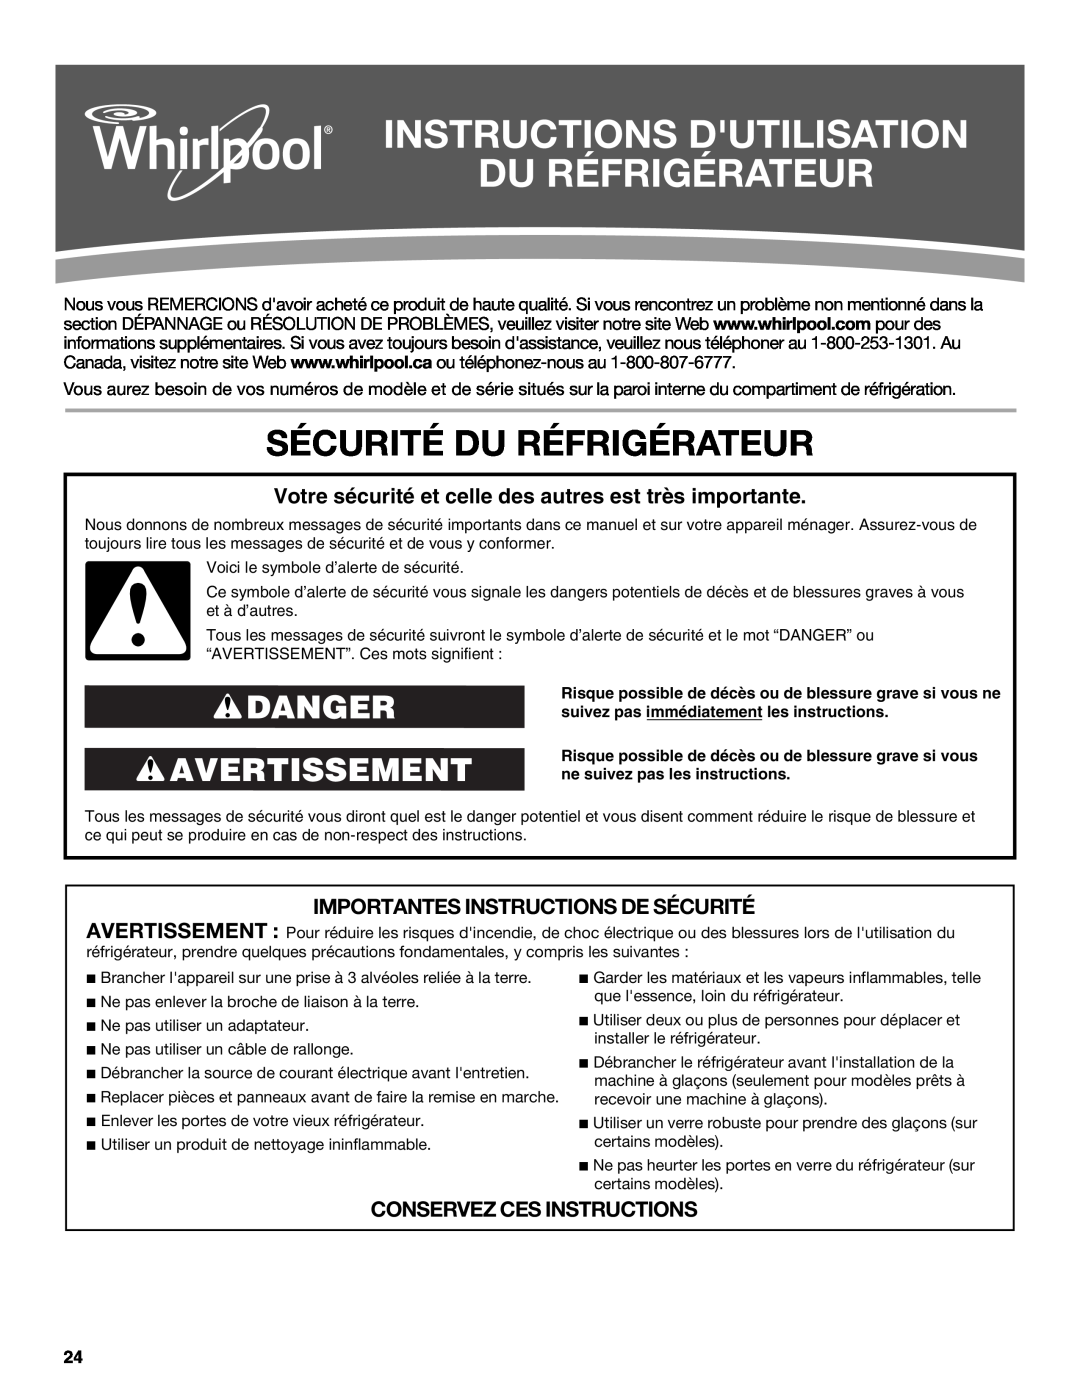 Whirlpool WRS325FNAM Instructions Dutilisation Du Réfrigérateur, Sécurité Du Réfrigérateur, Danger Avertissement 